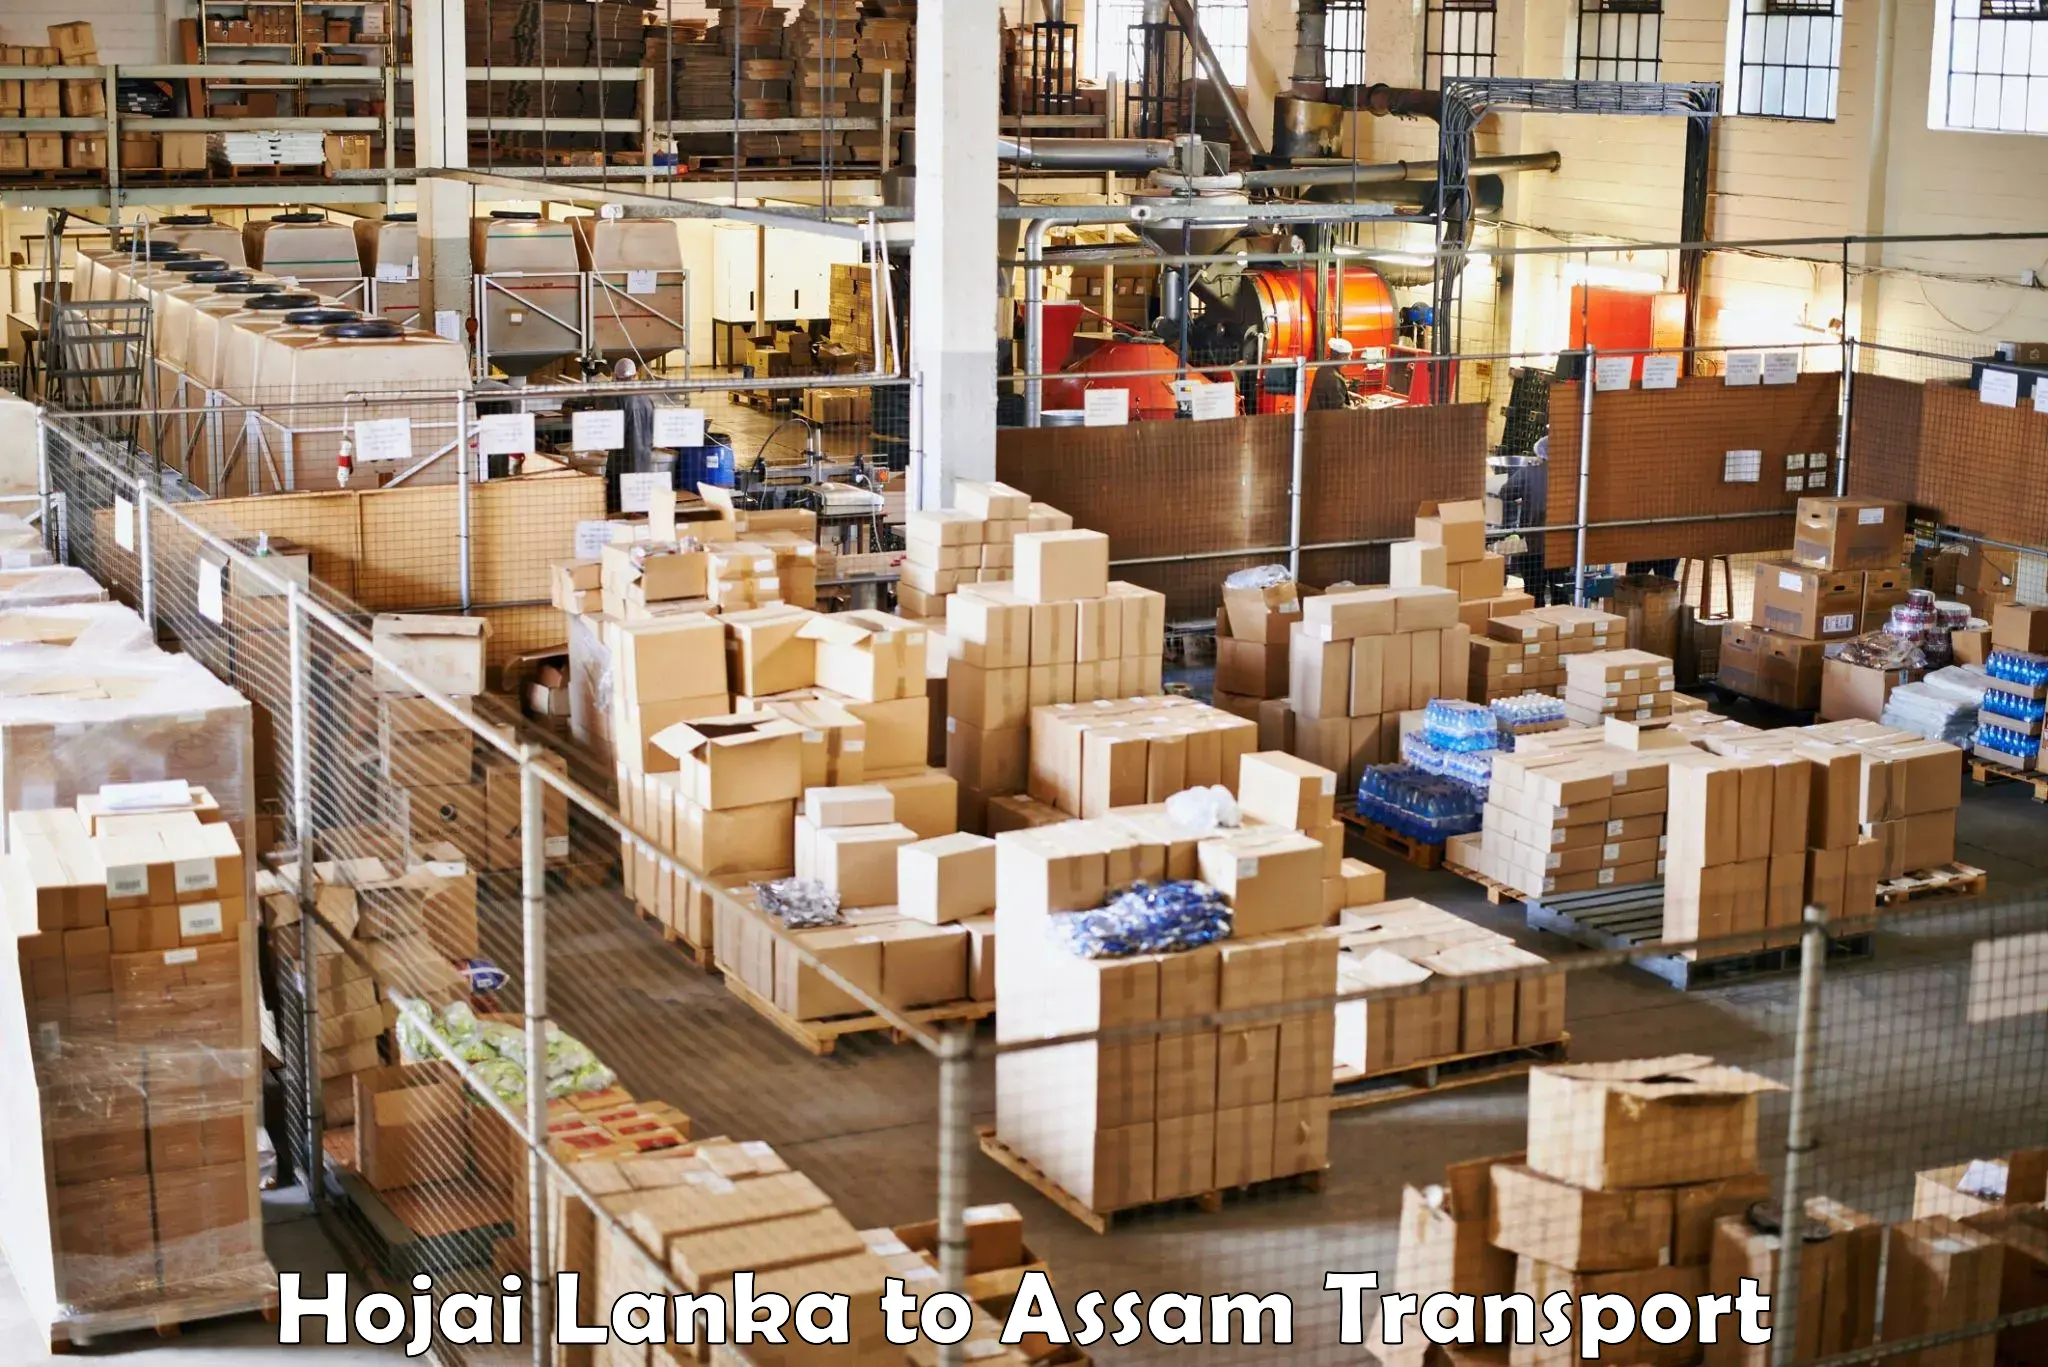 Part load transport service in India Hojai Lanka to Fekamari